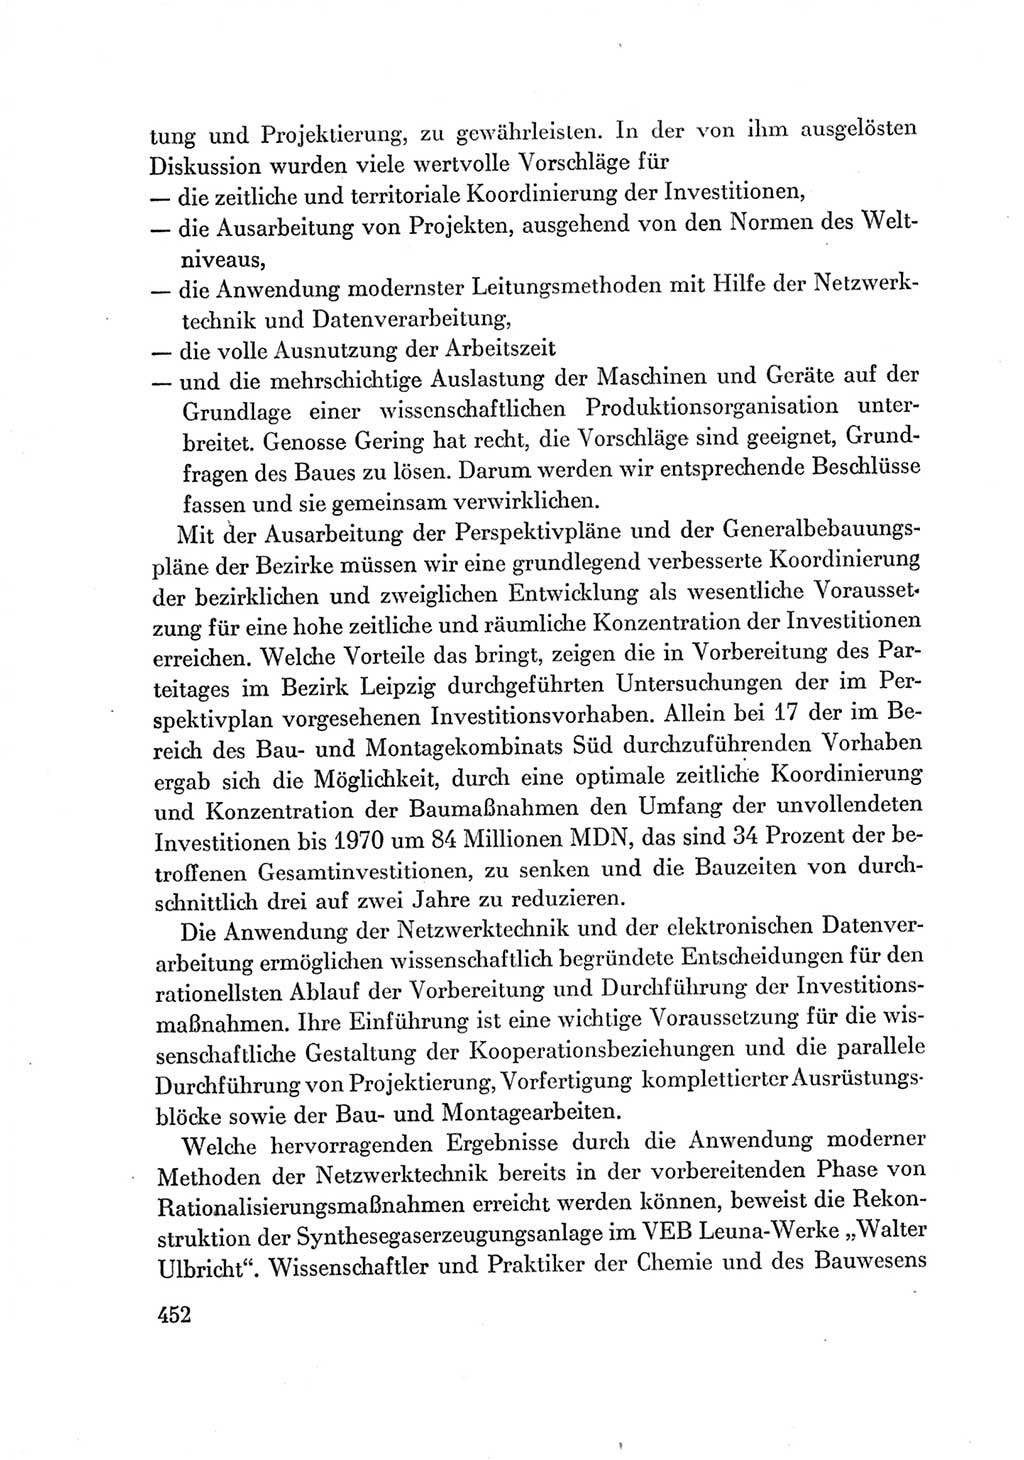 Protokoll der Verhandlungen des Ⅶ. Parteitages der Sozialistischen Einheitspartei Deutschlands (SED) [Deutsche Demokratische Republik (DDR)] 1967, Band Ⅰ, Seite 452 (Prot. Verh. Ⅶ. PT SED DDR 1967, Bd. Ⅰ, S. 452)